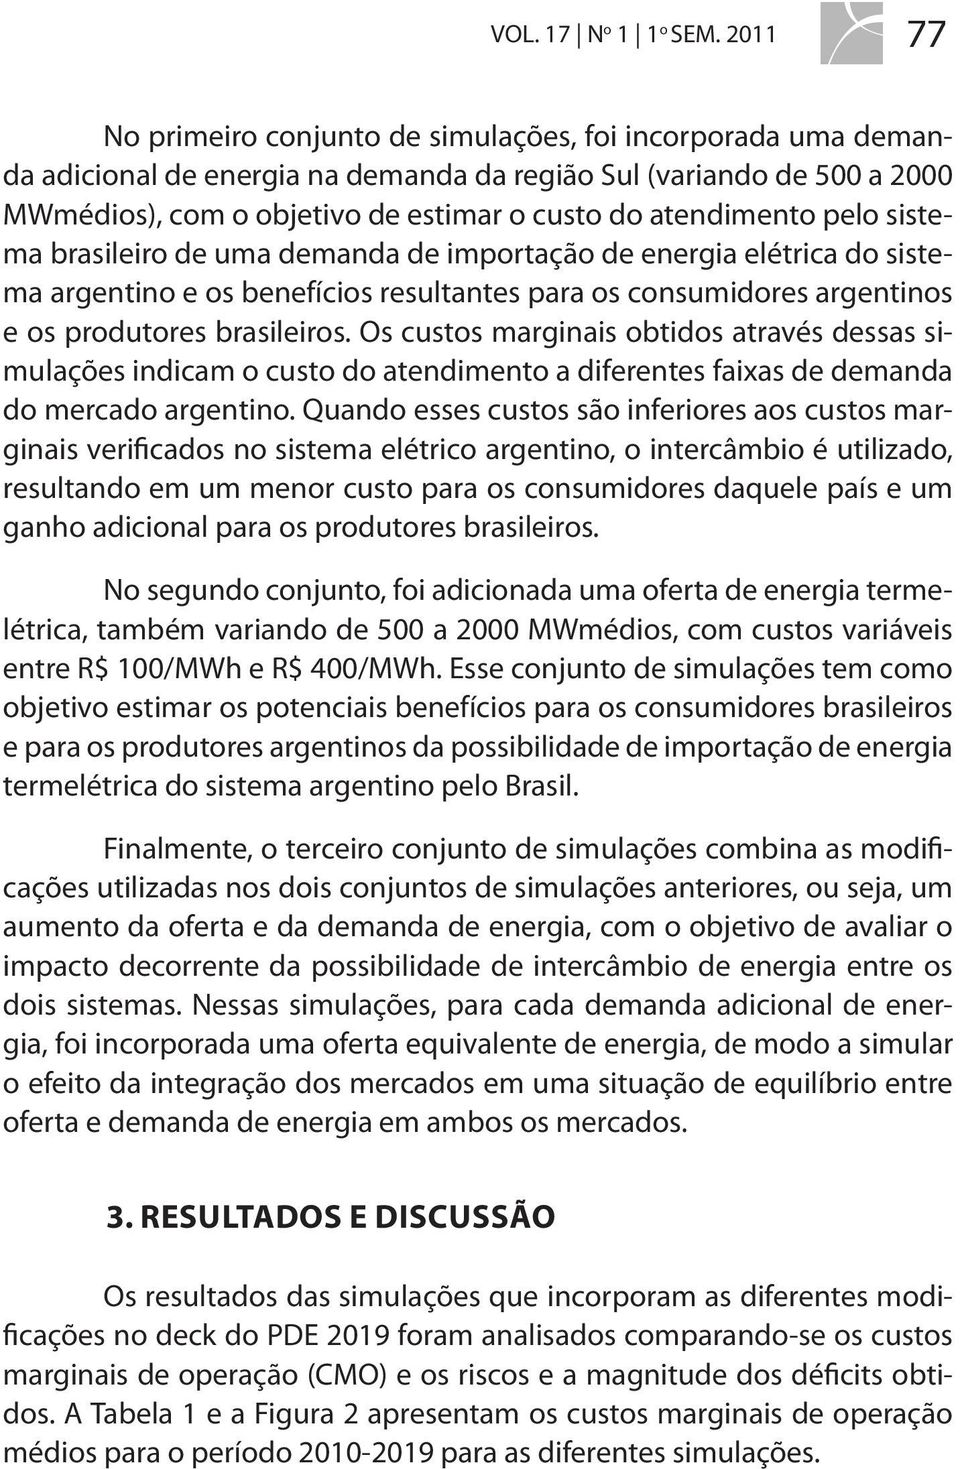 atendimento pelo sistema brasileiro de uma demanda de importação de energia elétrica do sistema argentino e os benefícios resultantes para os consumidores argentinos e os produtores brasileiros.